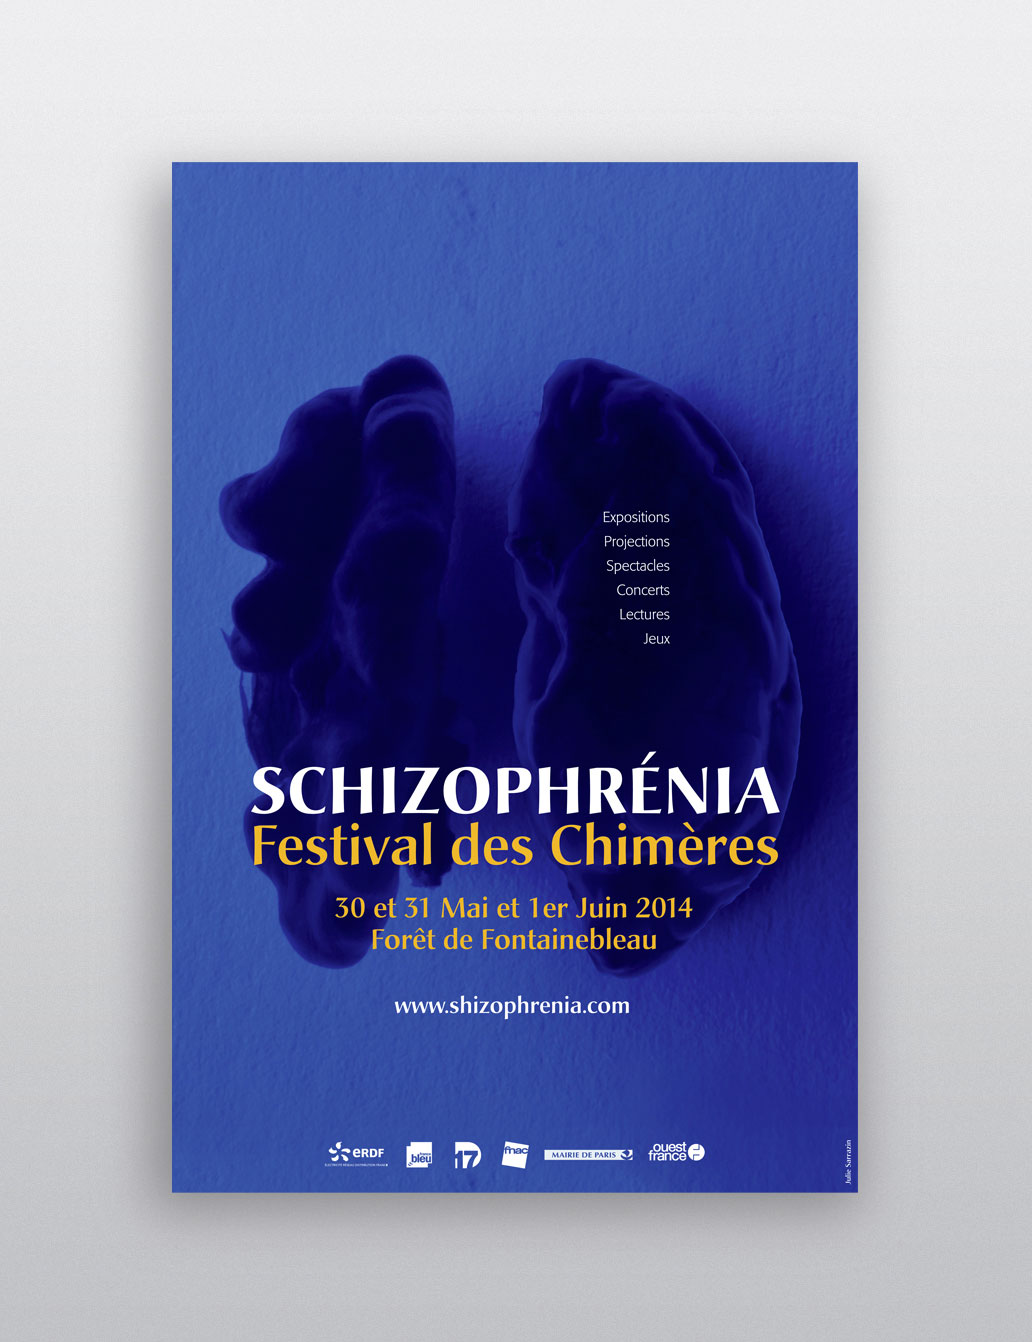 Visuel de l'affiche du festival Schizophrénia composée d'une photographie d'un cerveau dans les (...)